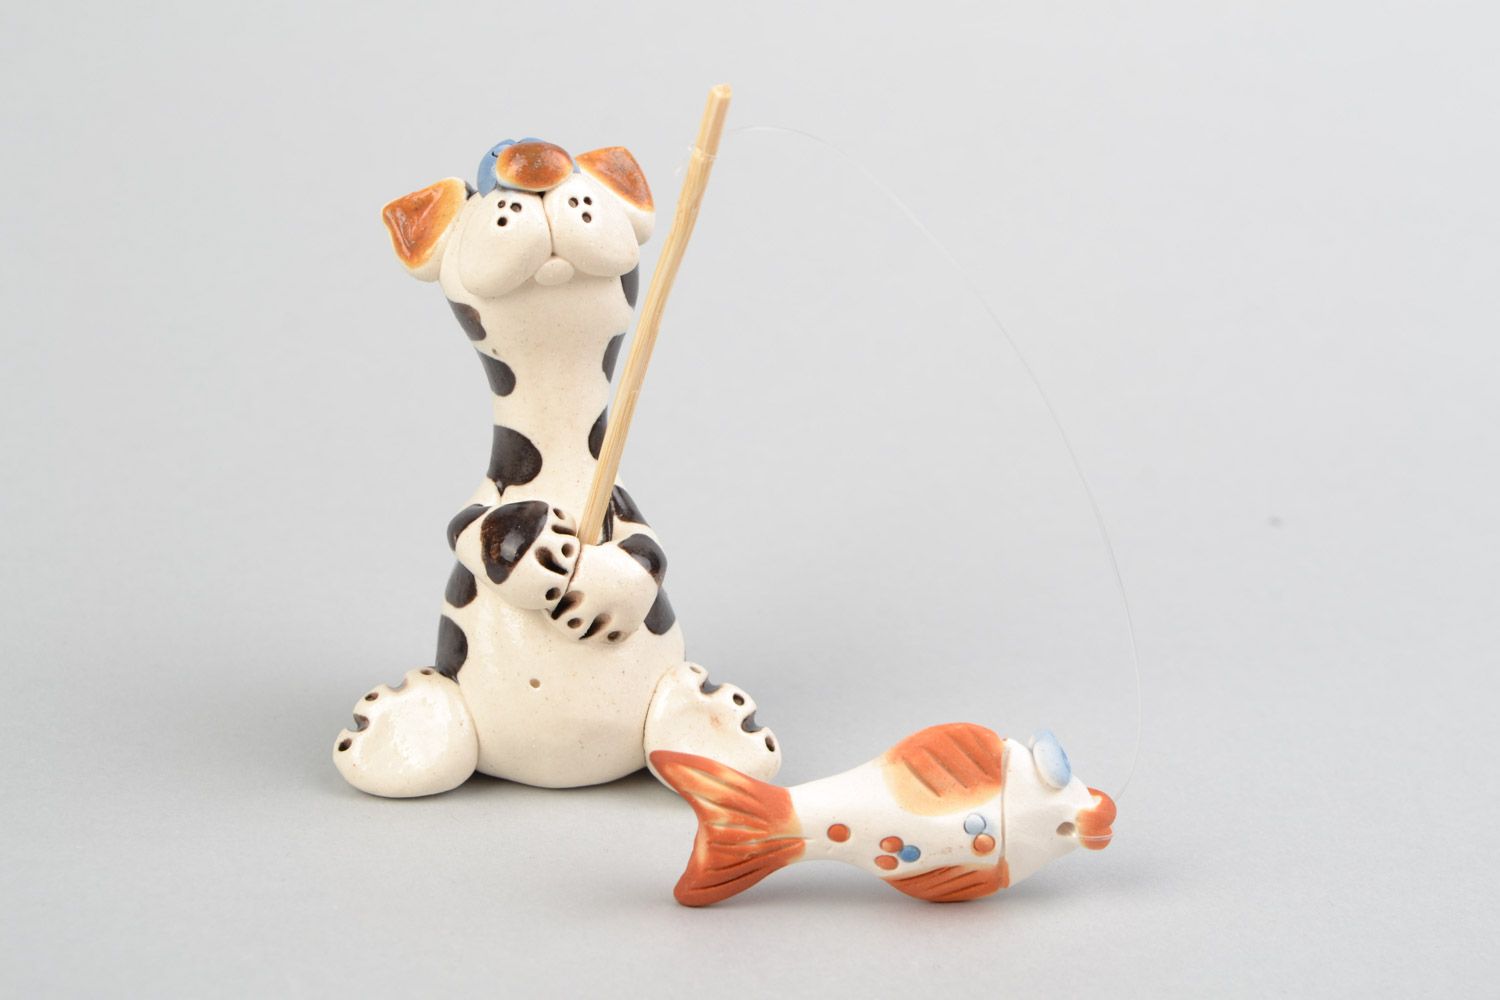 Авторская расписанная глазурью глиняная фигурка кота рыбака ручной работы фото 1